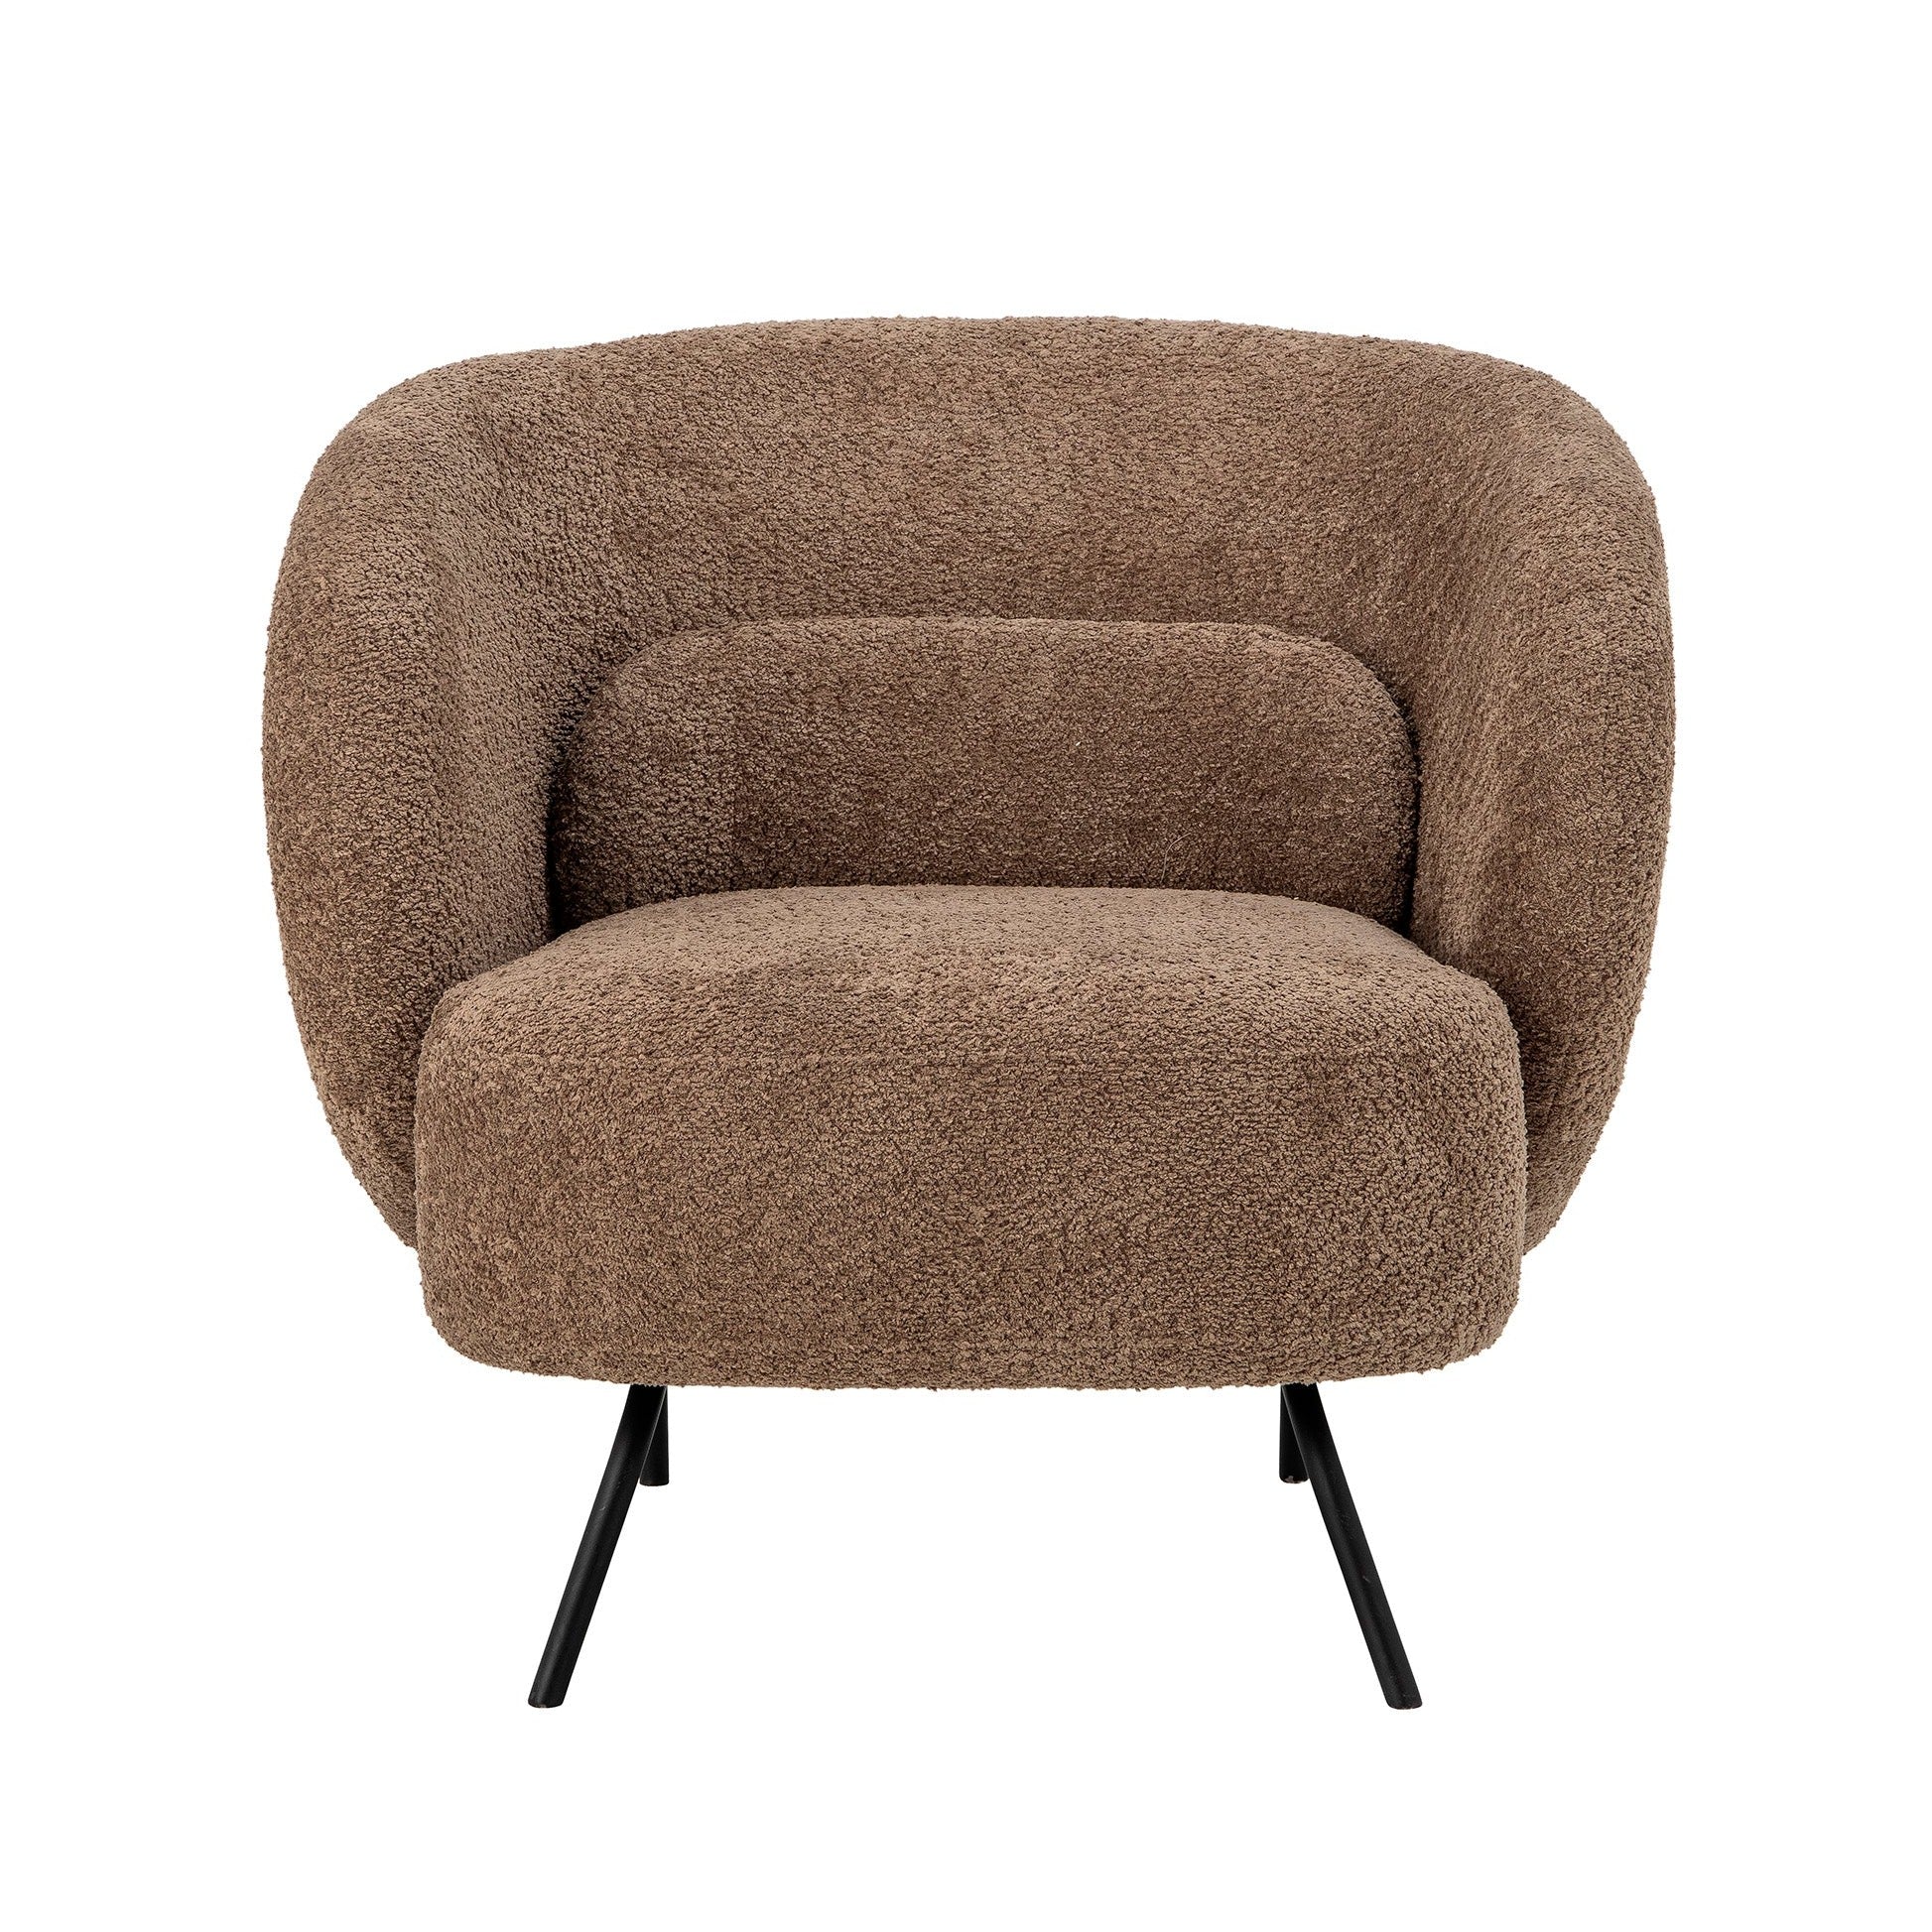 Lounge tool Harry on valmistatud pehmest ja kohevast polüesterkangast, mis lisab teie interjöörile hubase välimuse. Kaasasolev väike padi pakub täiendavat tuge seljale, samas kui õhukesed metalljalad annavad toolile moodsa ja elegantse disaini.